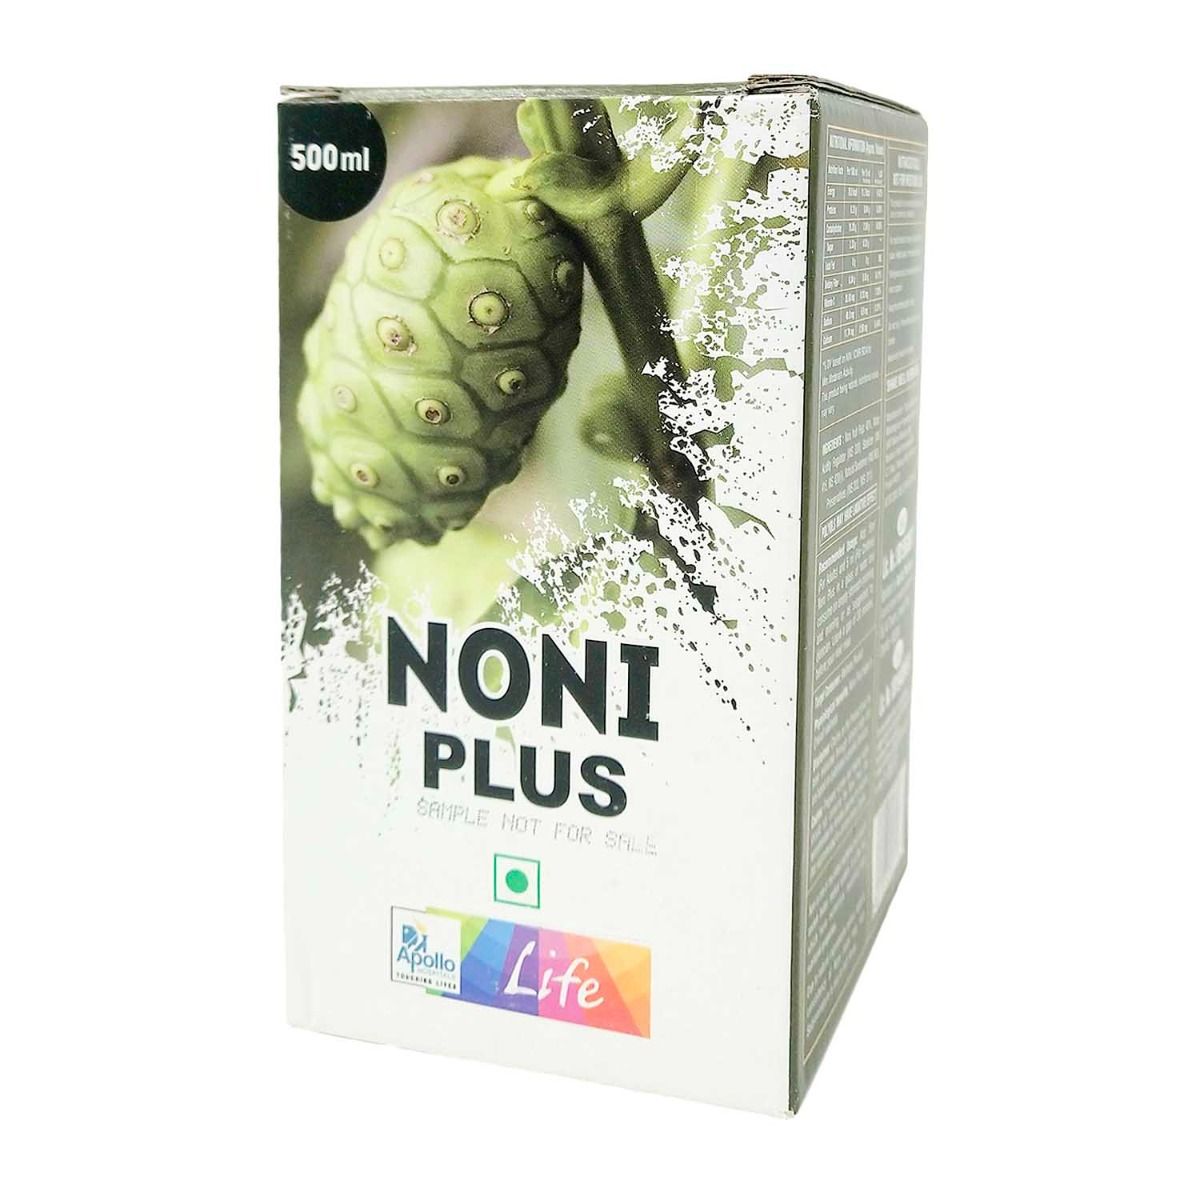 Apollo Life Noni Plus Juice, 500 ml, Pack of 1 